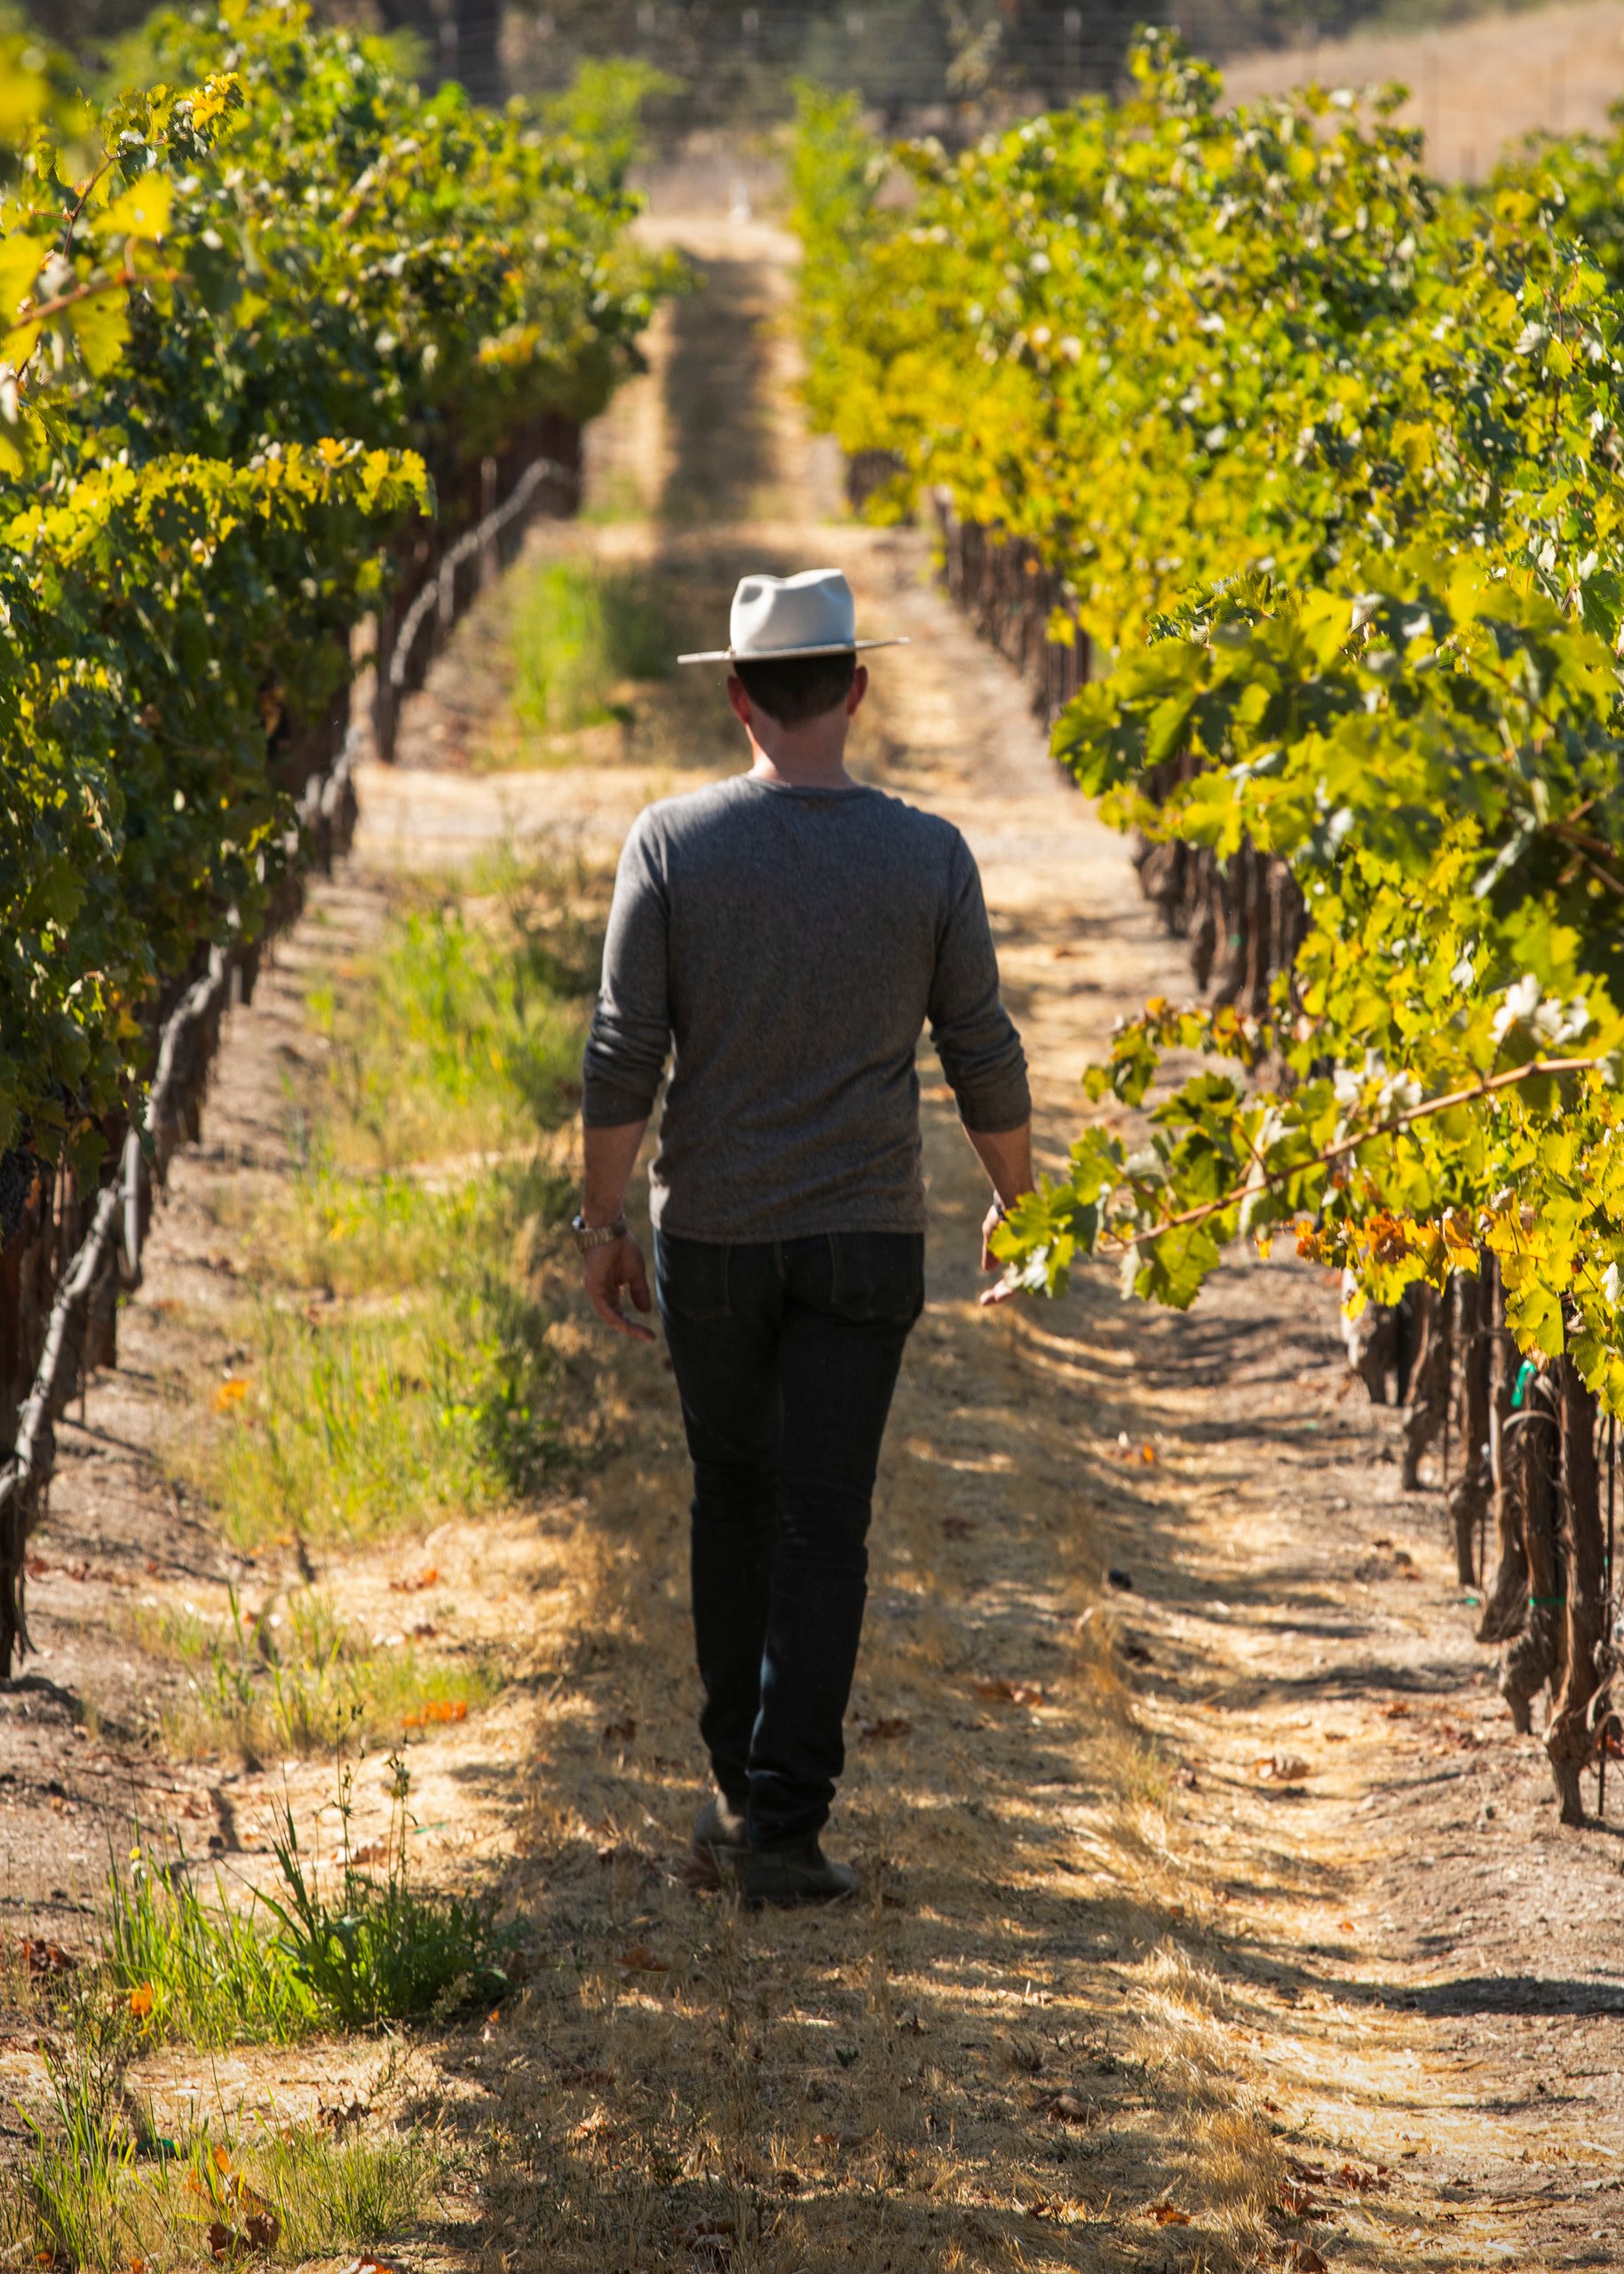 Austin walking through vineyards